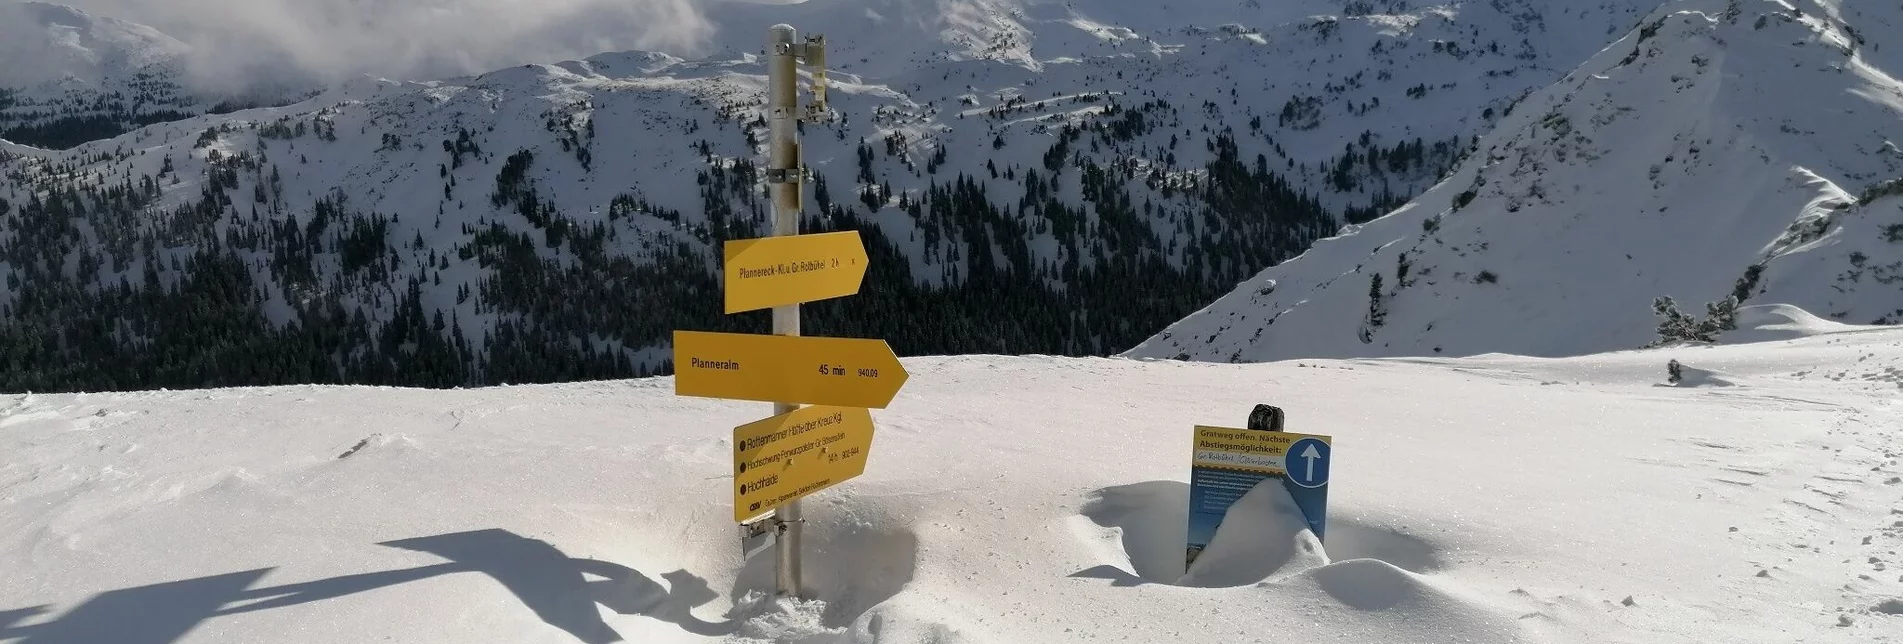 Skitour Skitour zum Hochrettelstein - Touren-Impression #1 | © Erlebnisregion Schladming-Dachstein